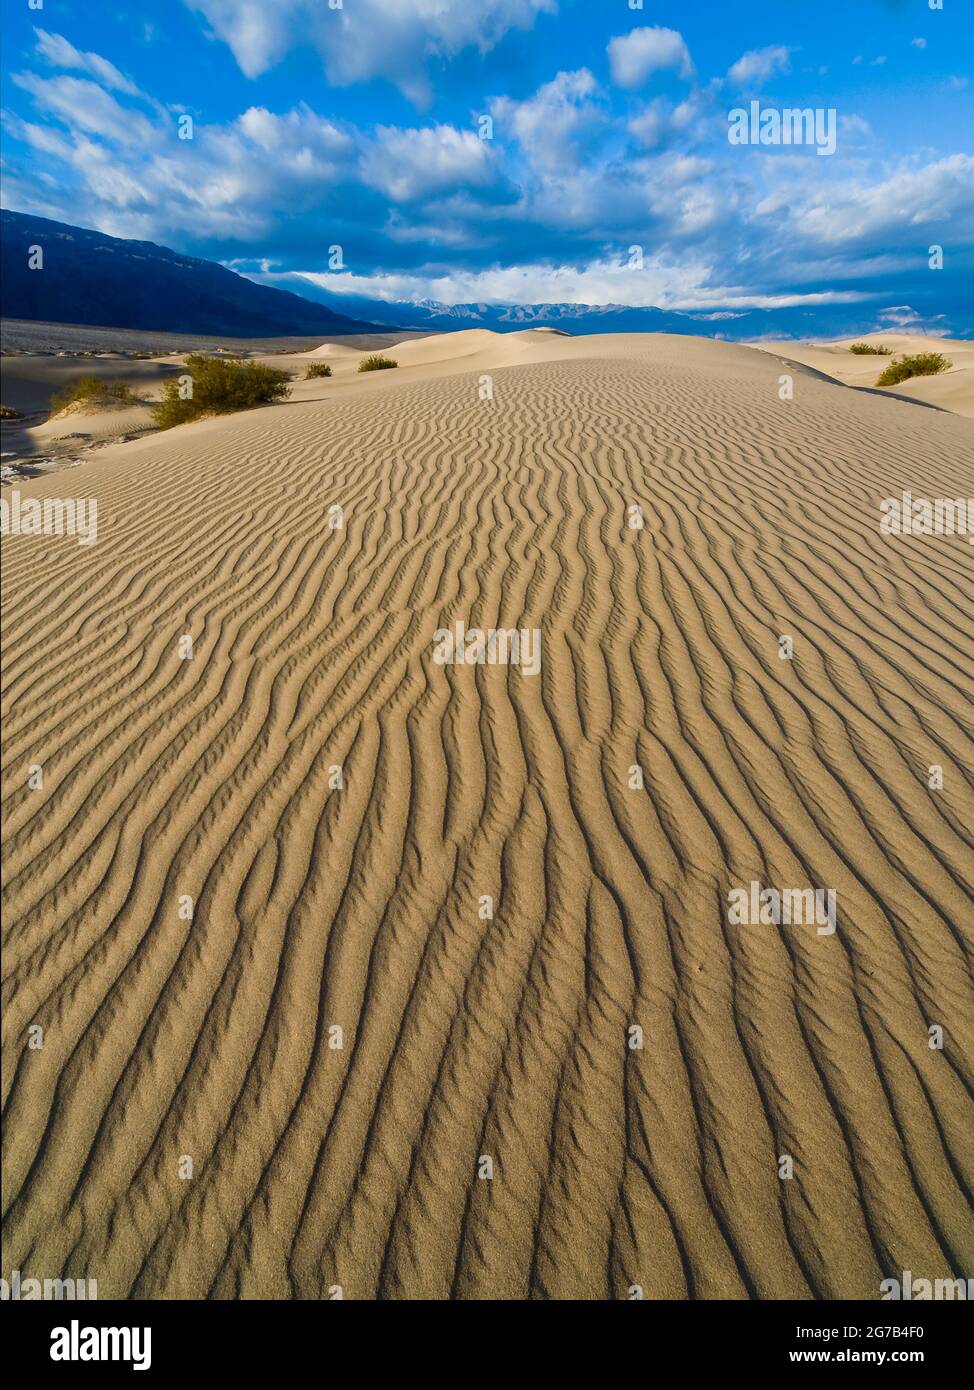 Stovepipe Wells Sand Dunes, Parque Nacional del Valle de la Muerte, California, Estados Unidos, Foto de stock